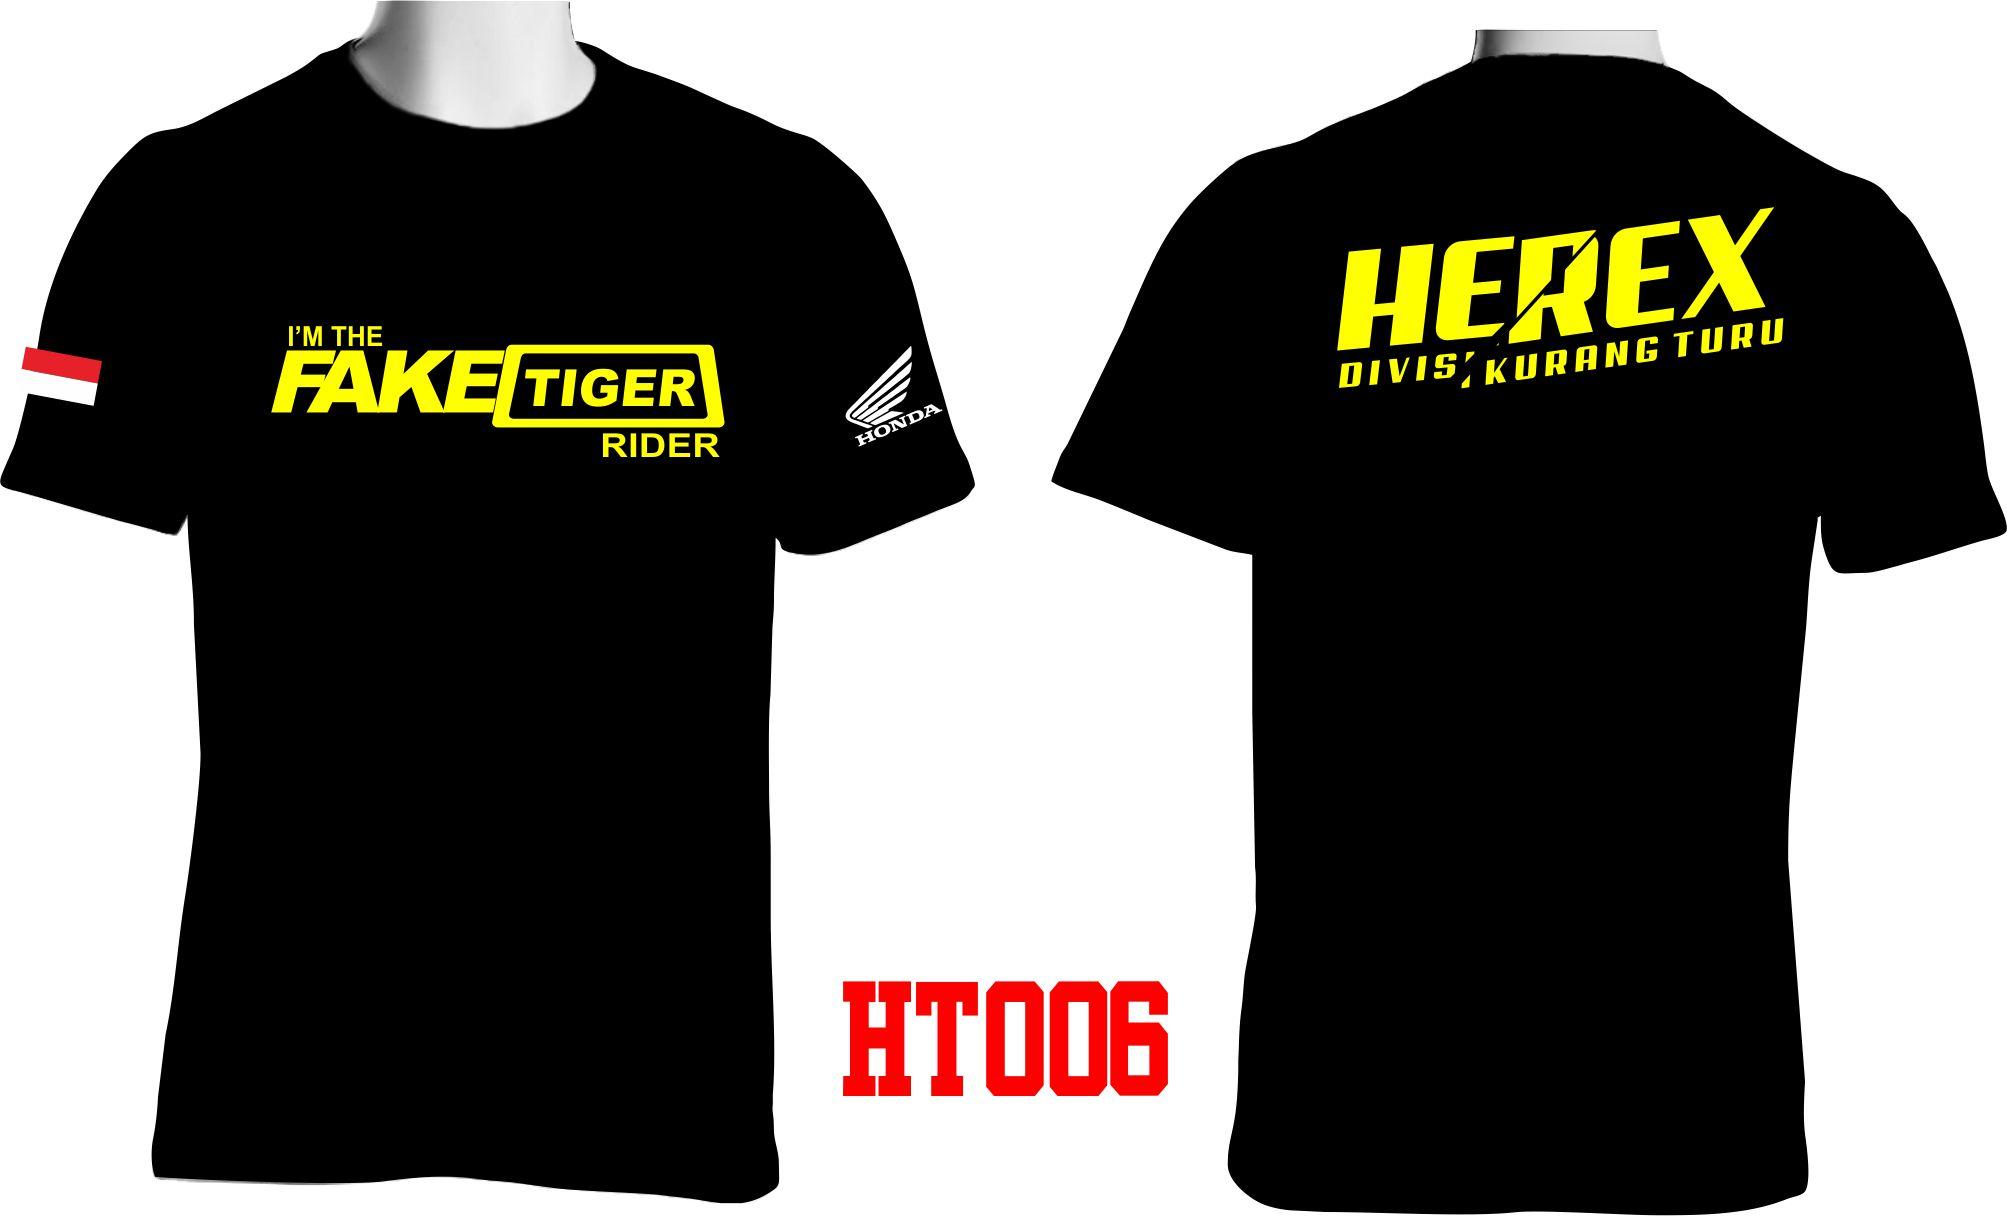 Baju Herex Tiger : Harga Spesifikasi Kaos Racing Anak Sedulur Herex Dan Perbandingan Toko Harga ...